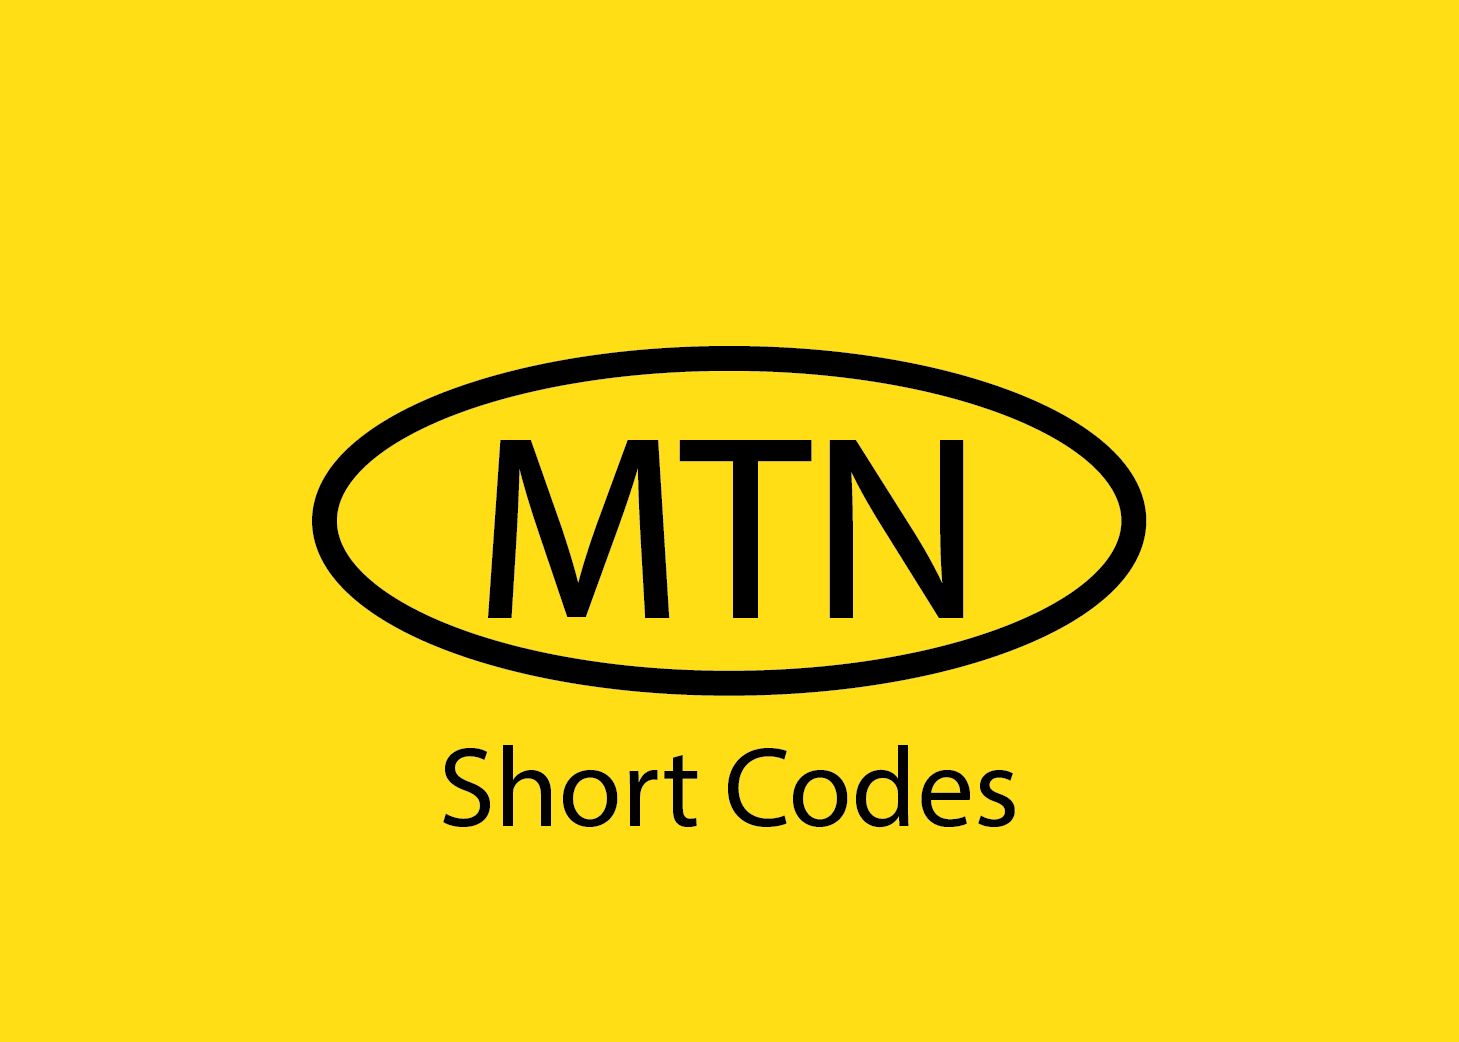 A photo for MTN Ghana short codes